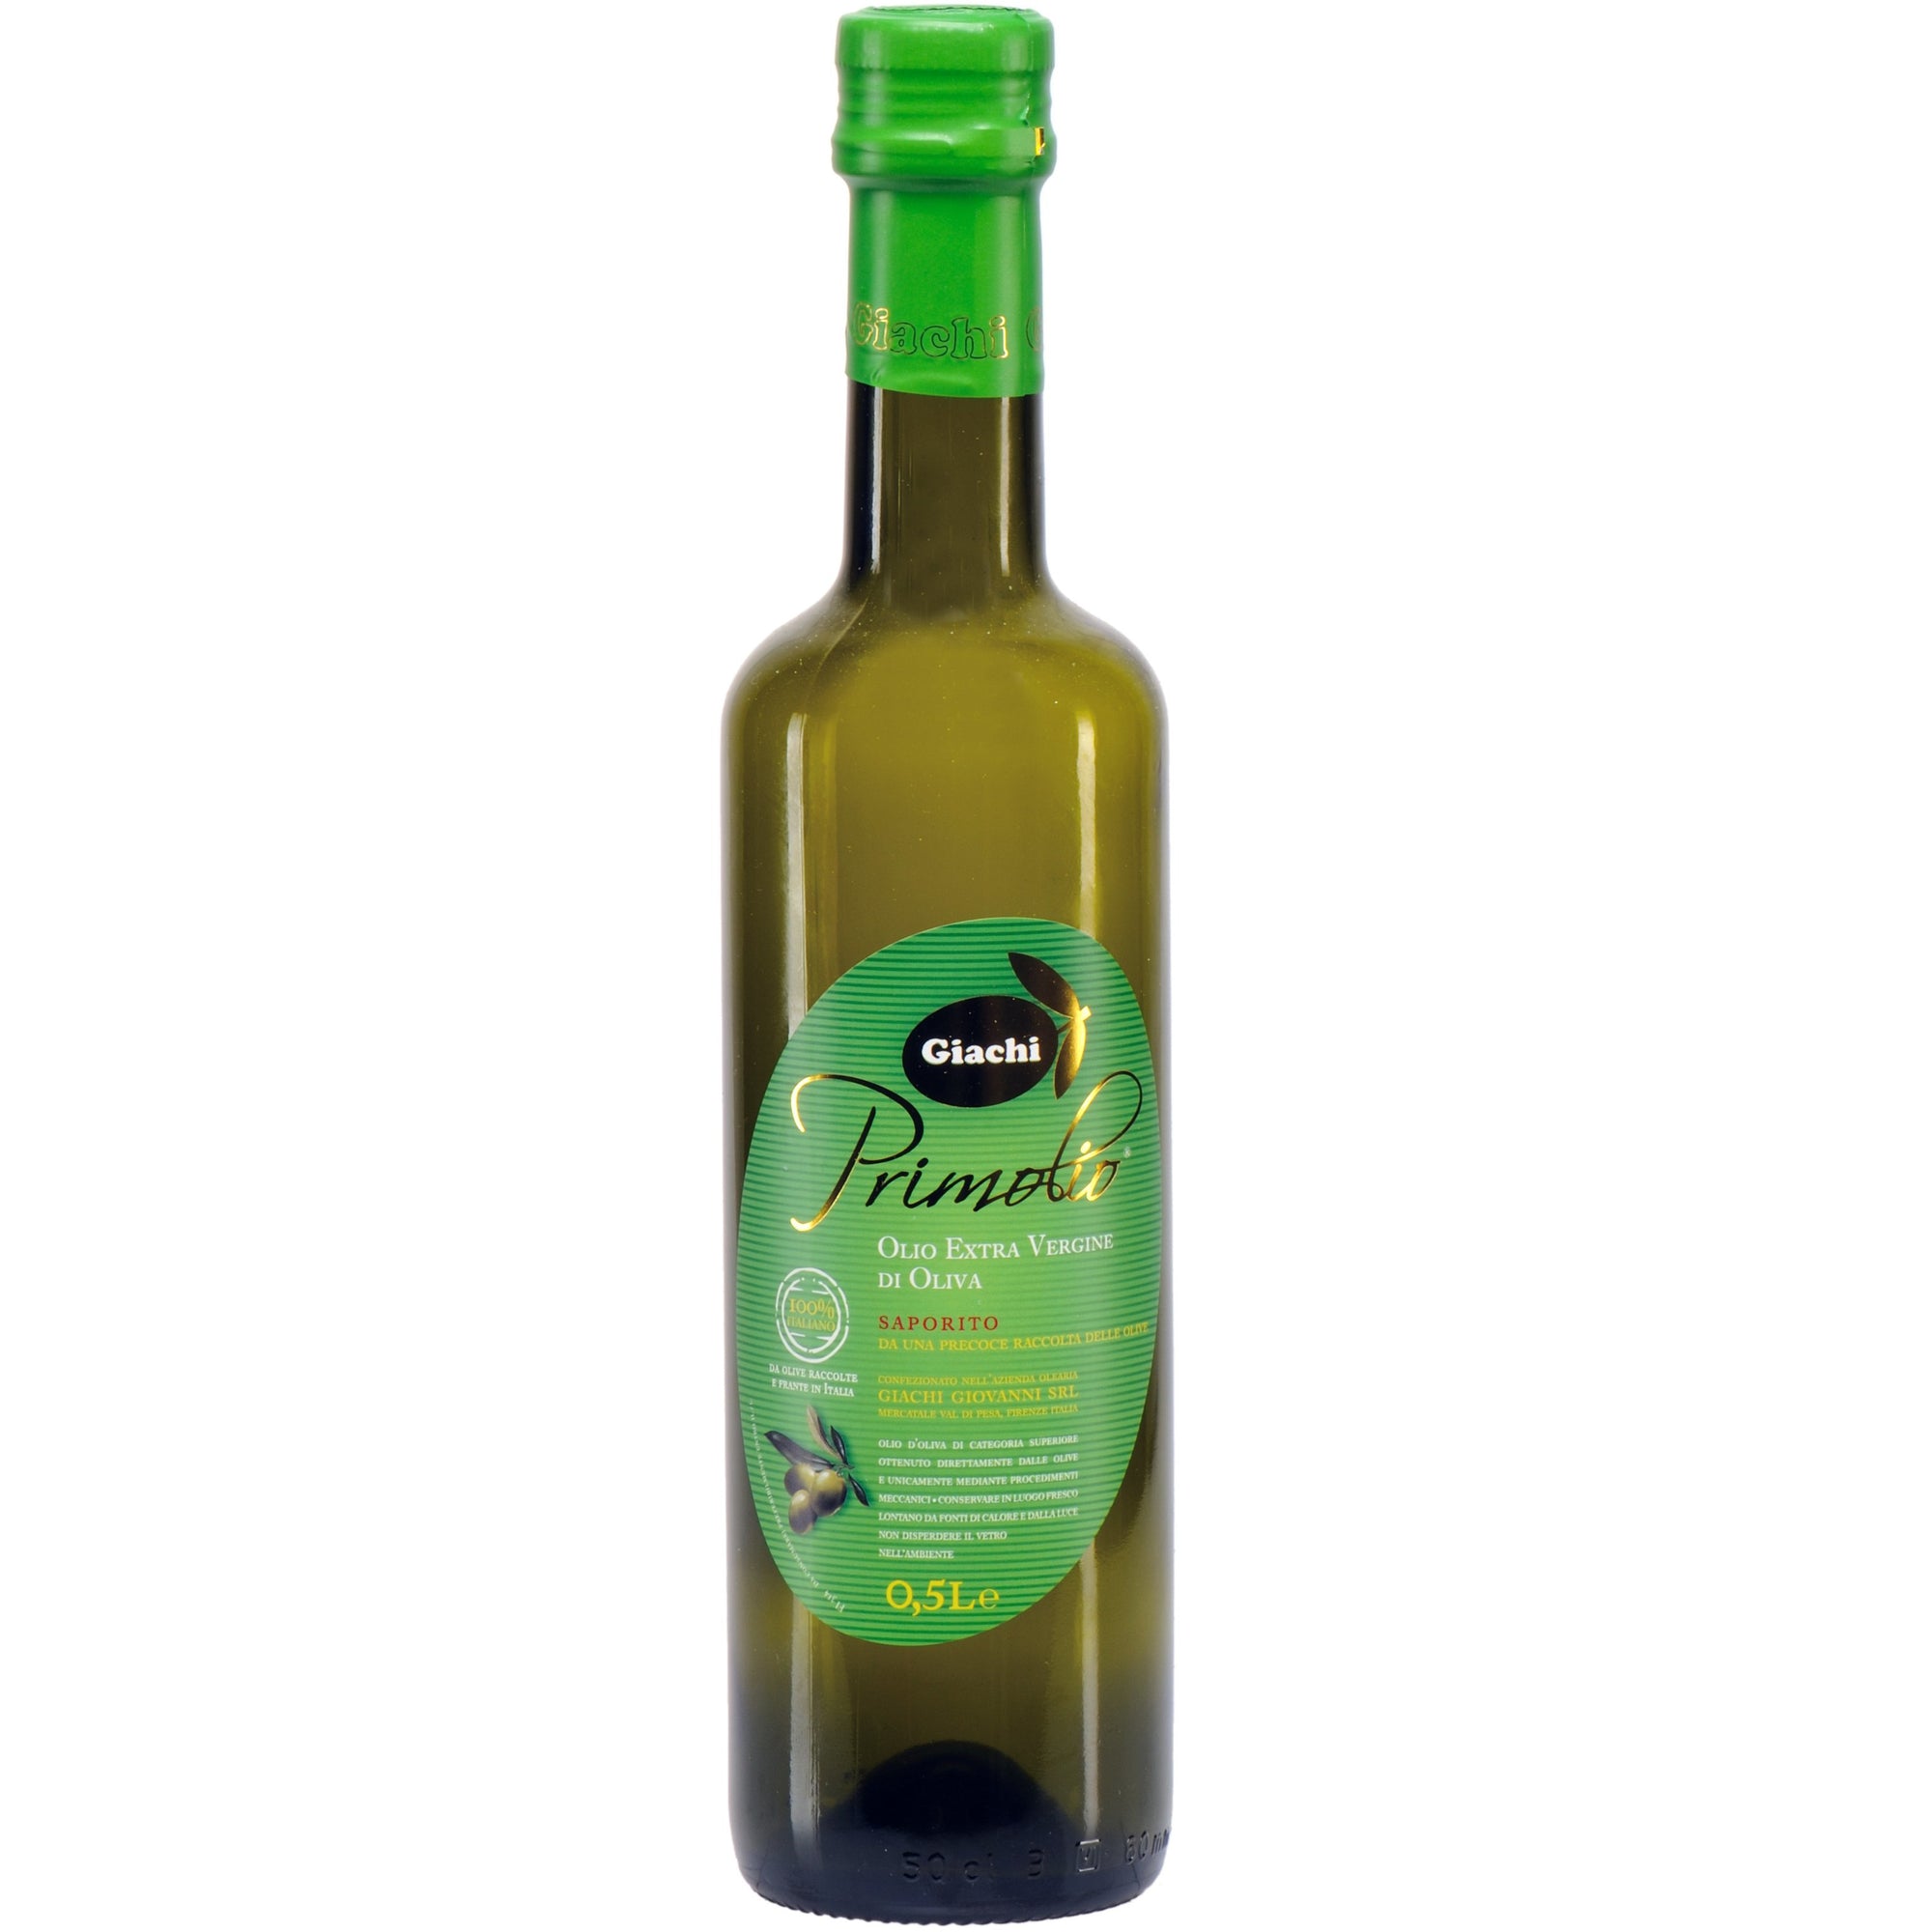 Giachi Primolio Extra Virgin Olive Oil 500mL